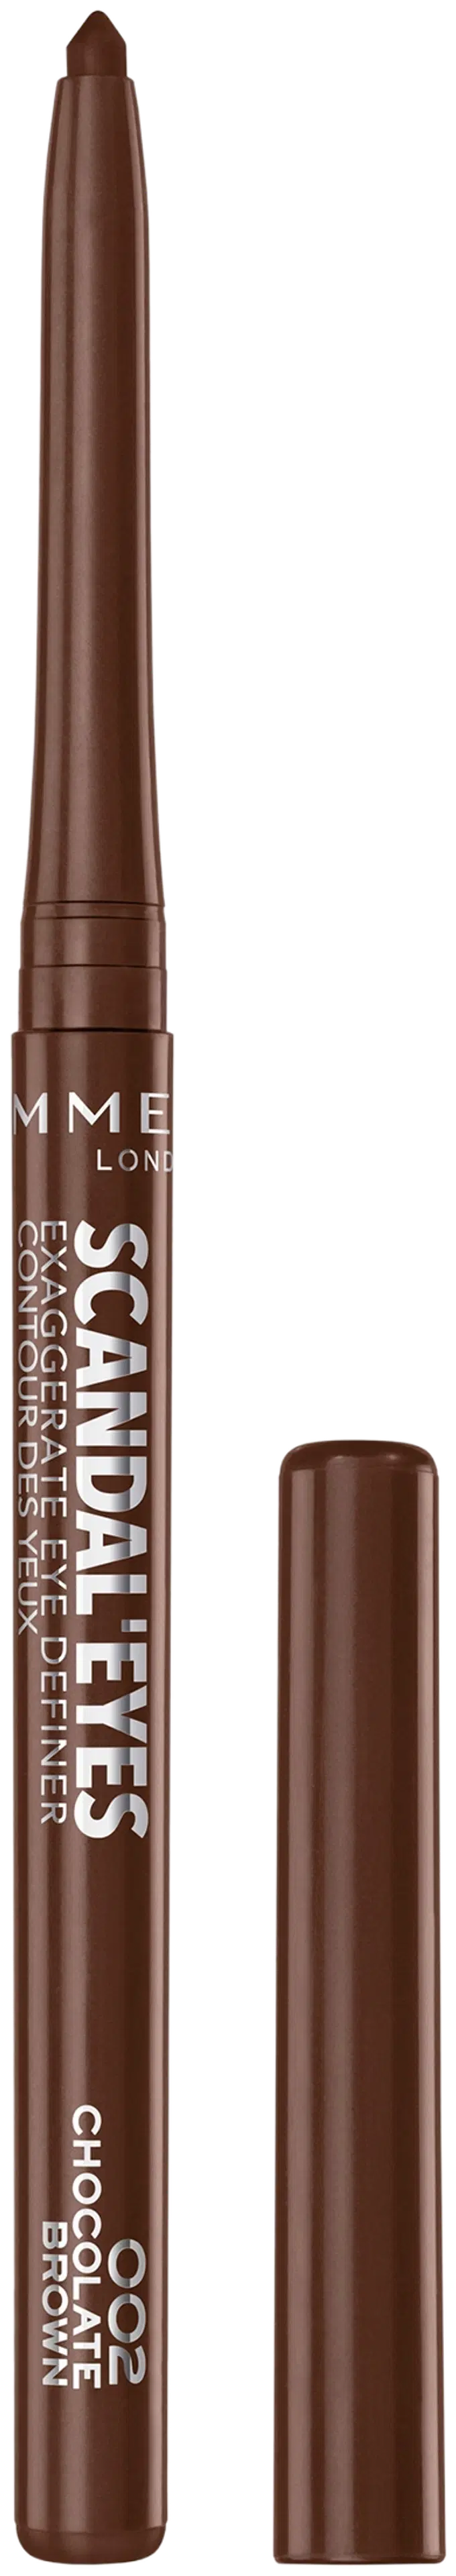 Rimmel Scandal'eyes Eye Definer 0,35 g, 002 Chocolate Brown silmänrajauskynä